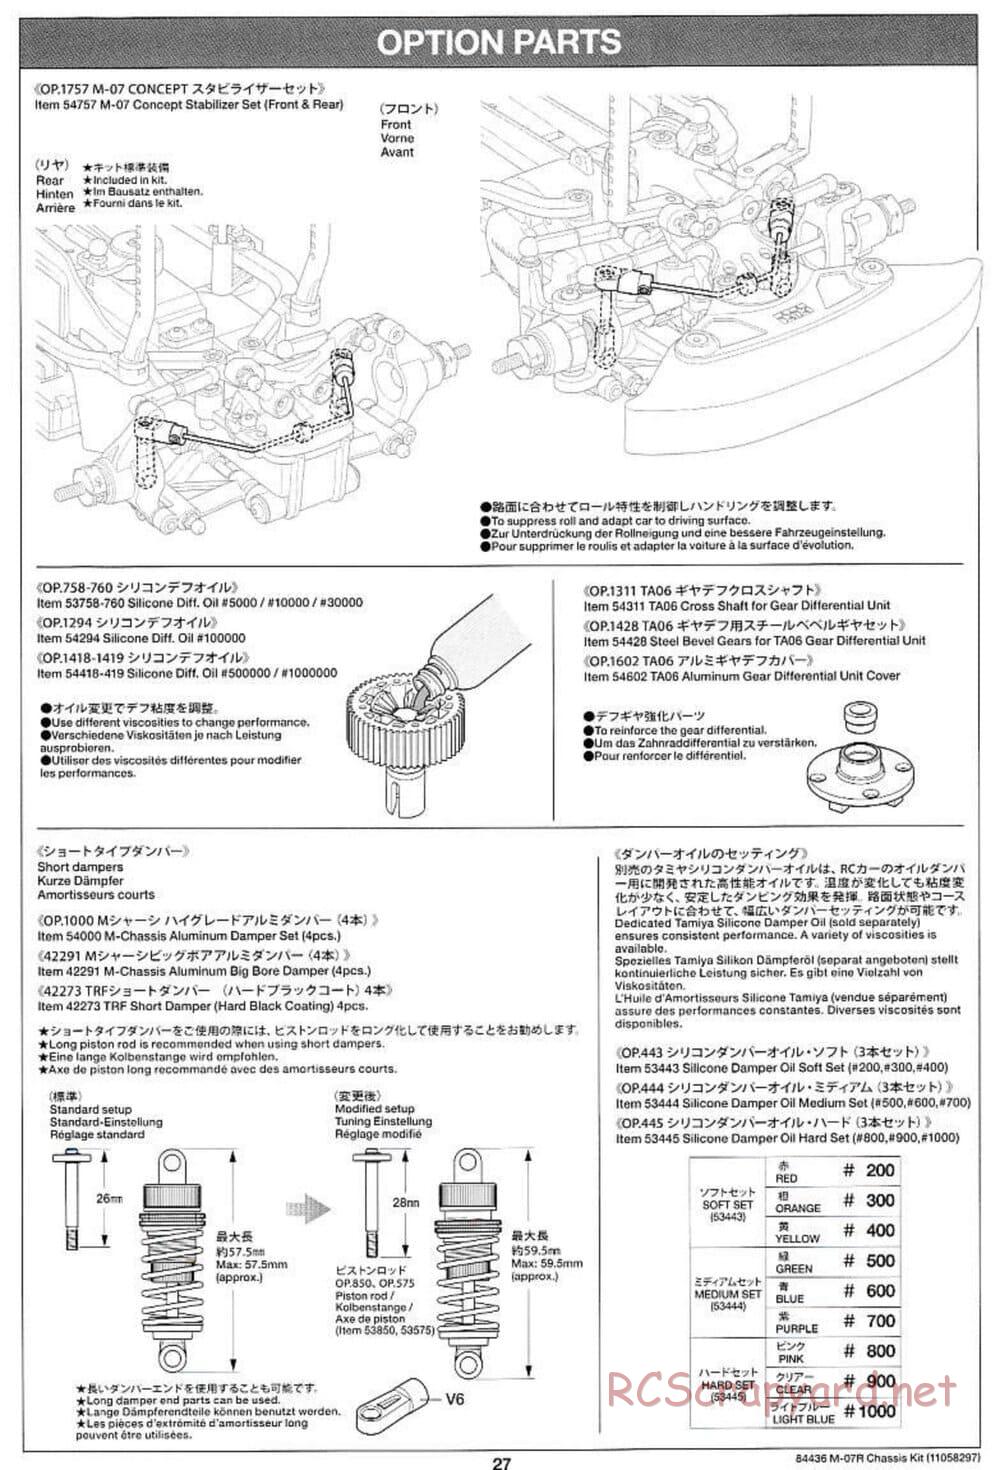 Tamiya - M-07R Chassis - Manual - Page 27